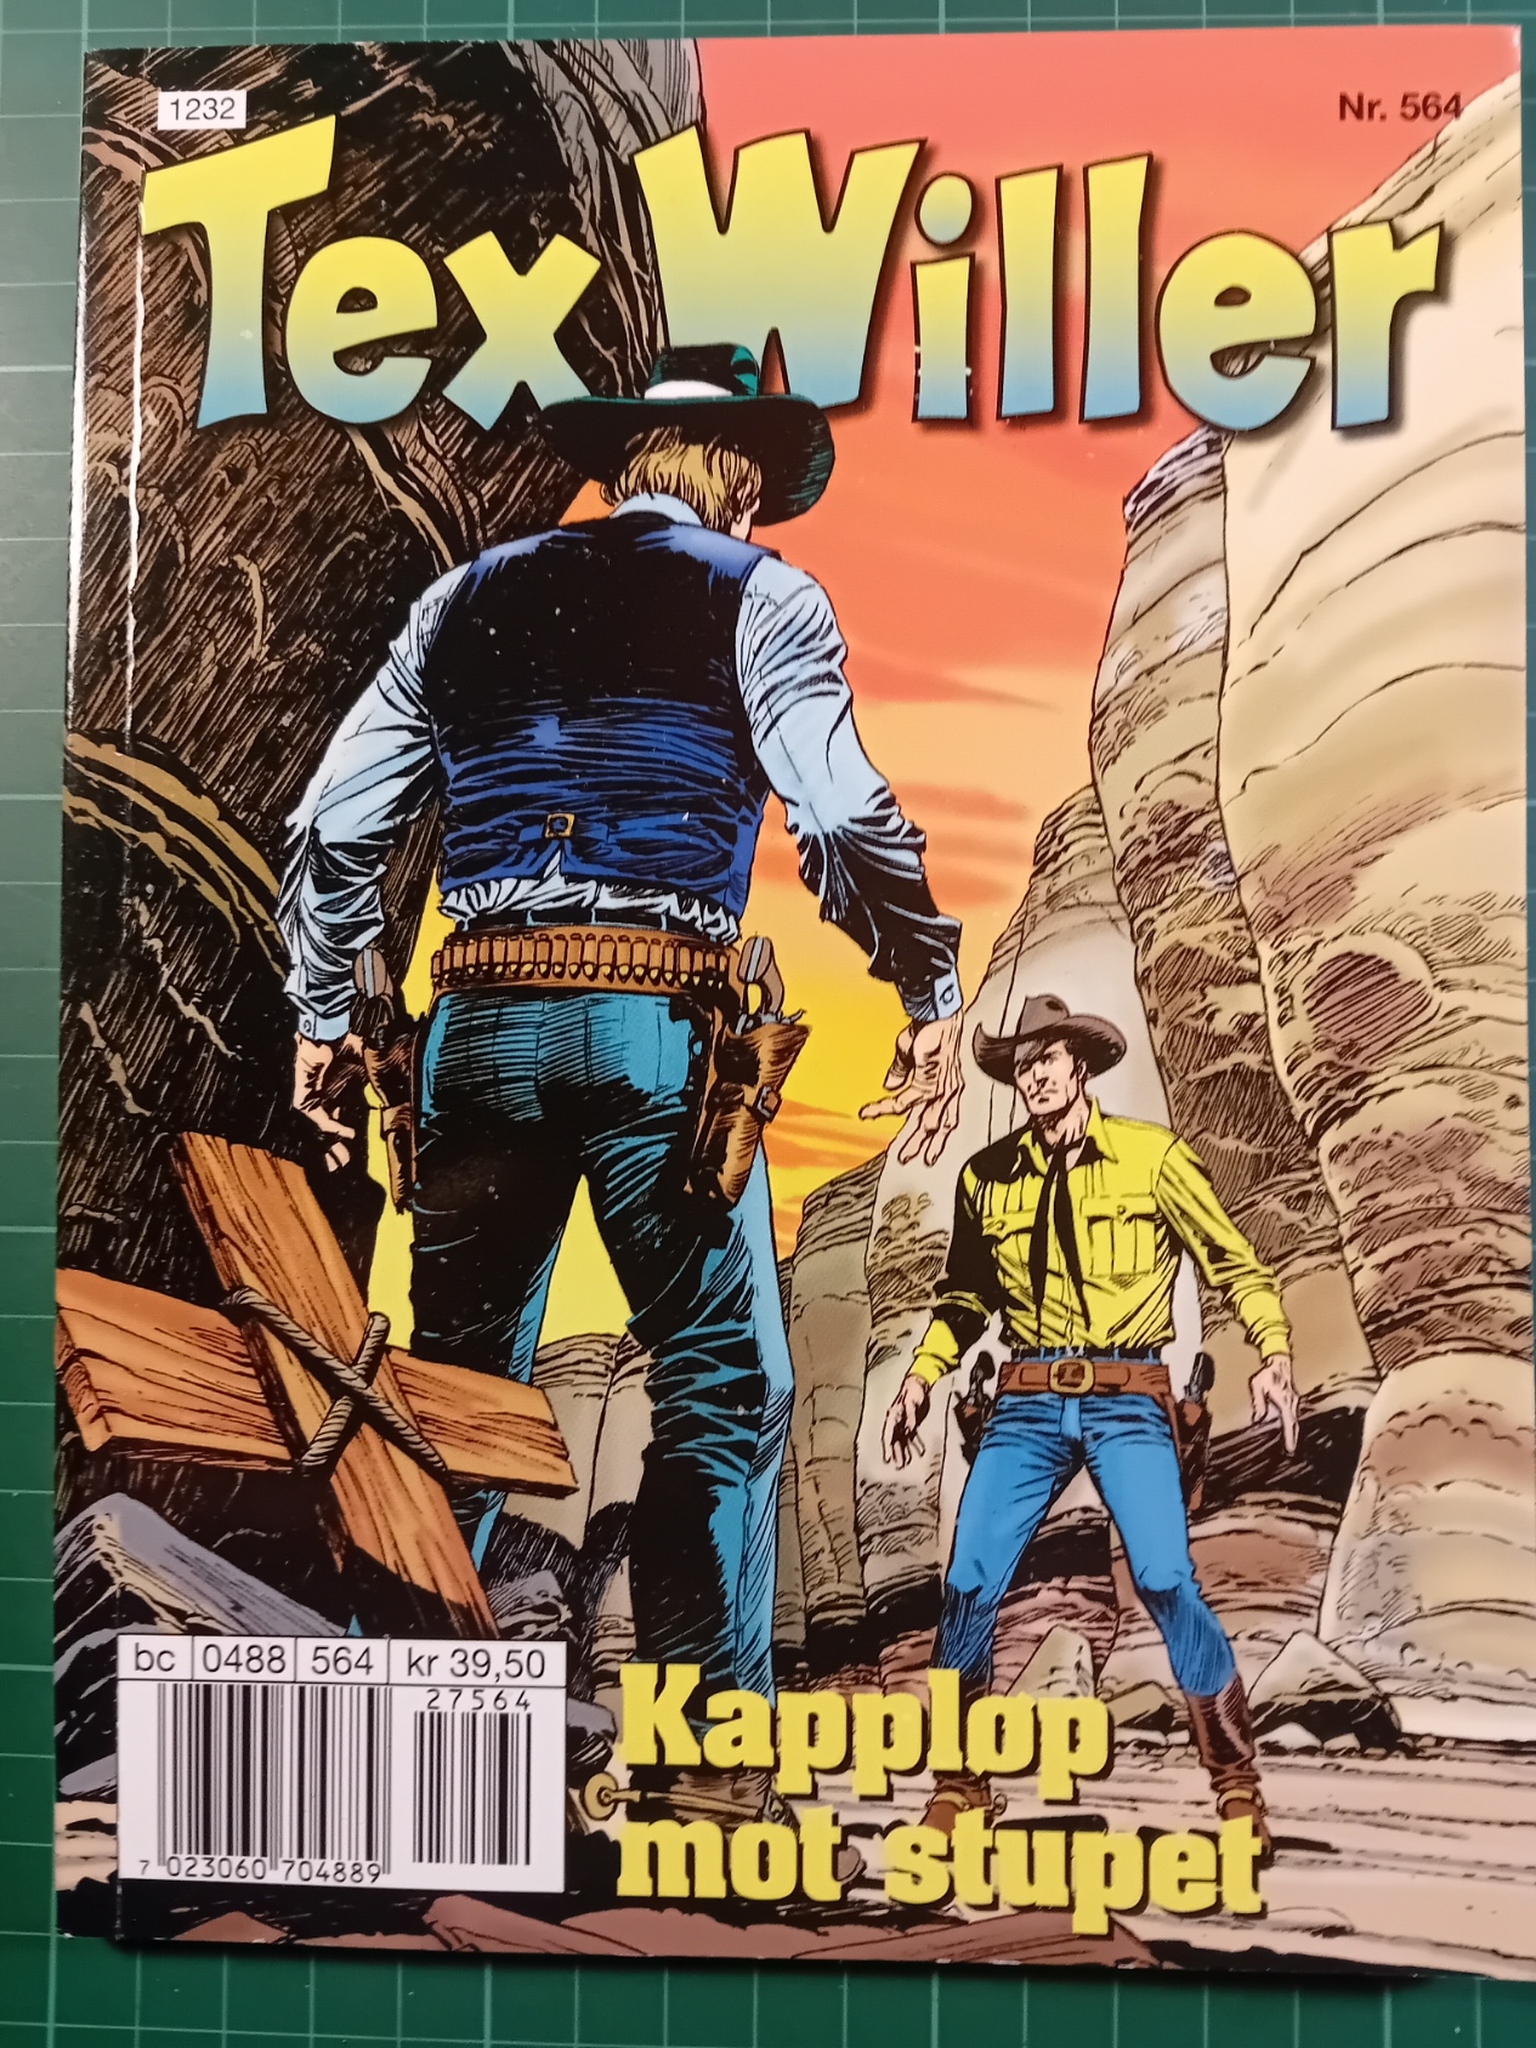 Tex Willer #564